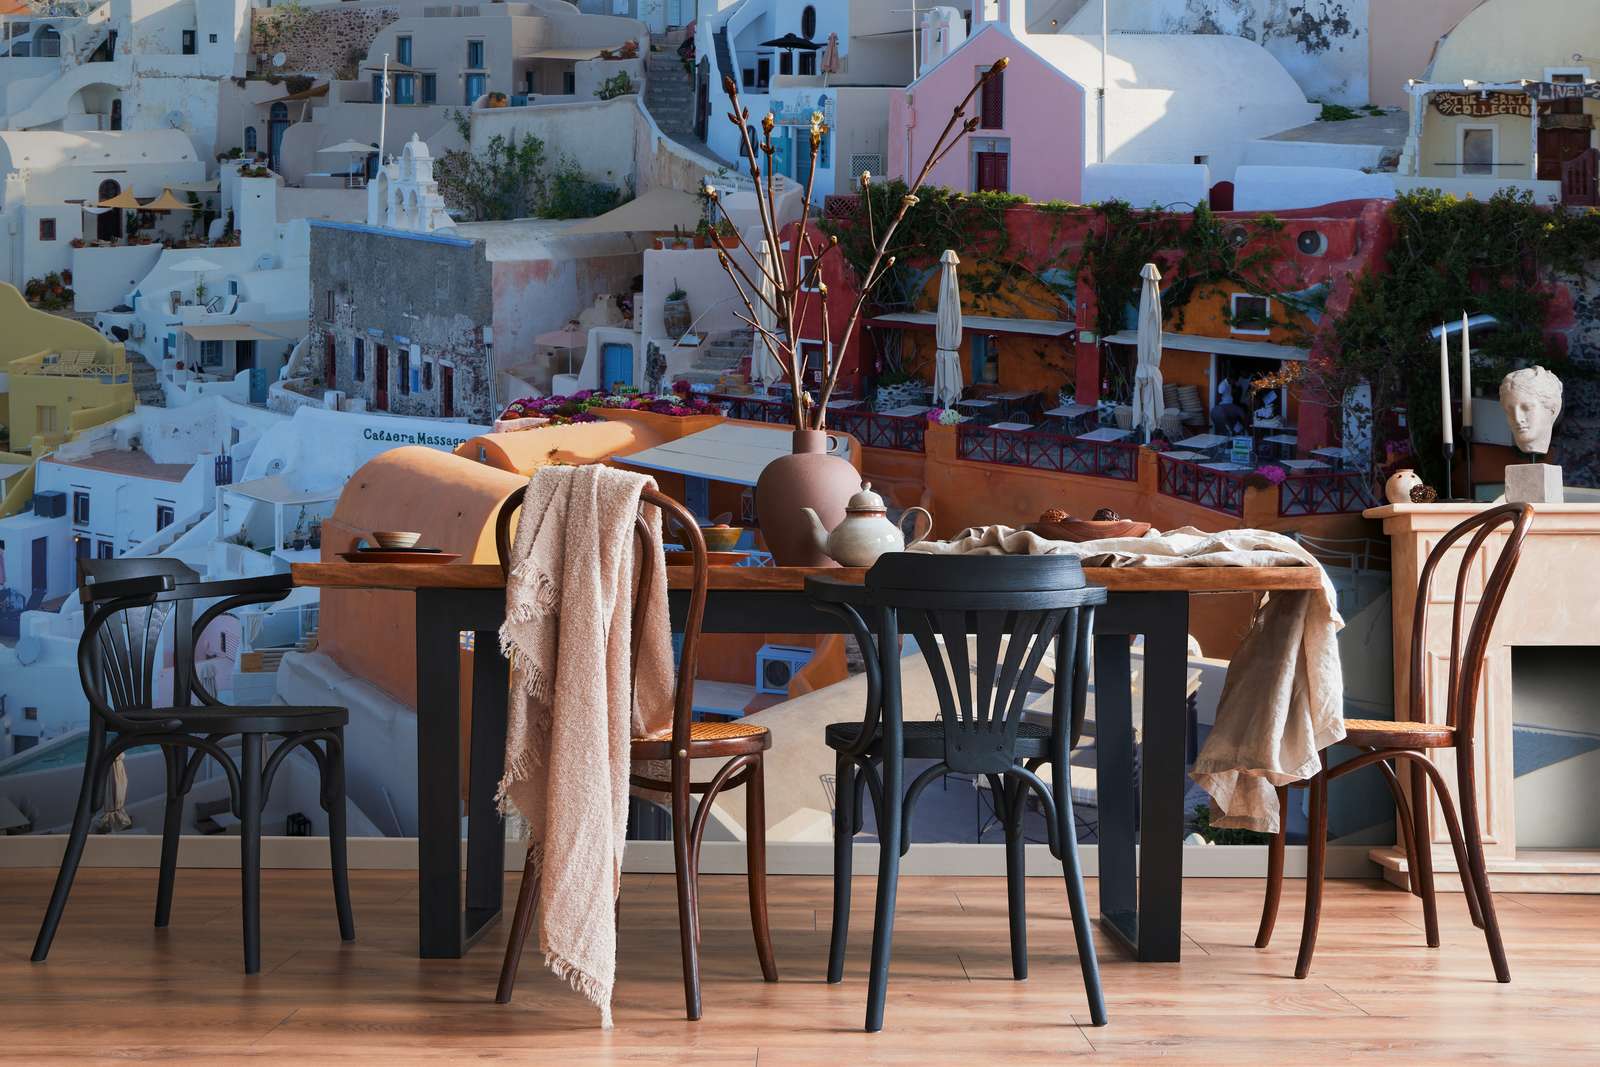             Fotomurali Case di Santorini - Vello liscio di qualità superiore
        